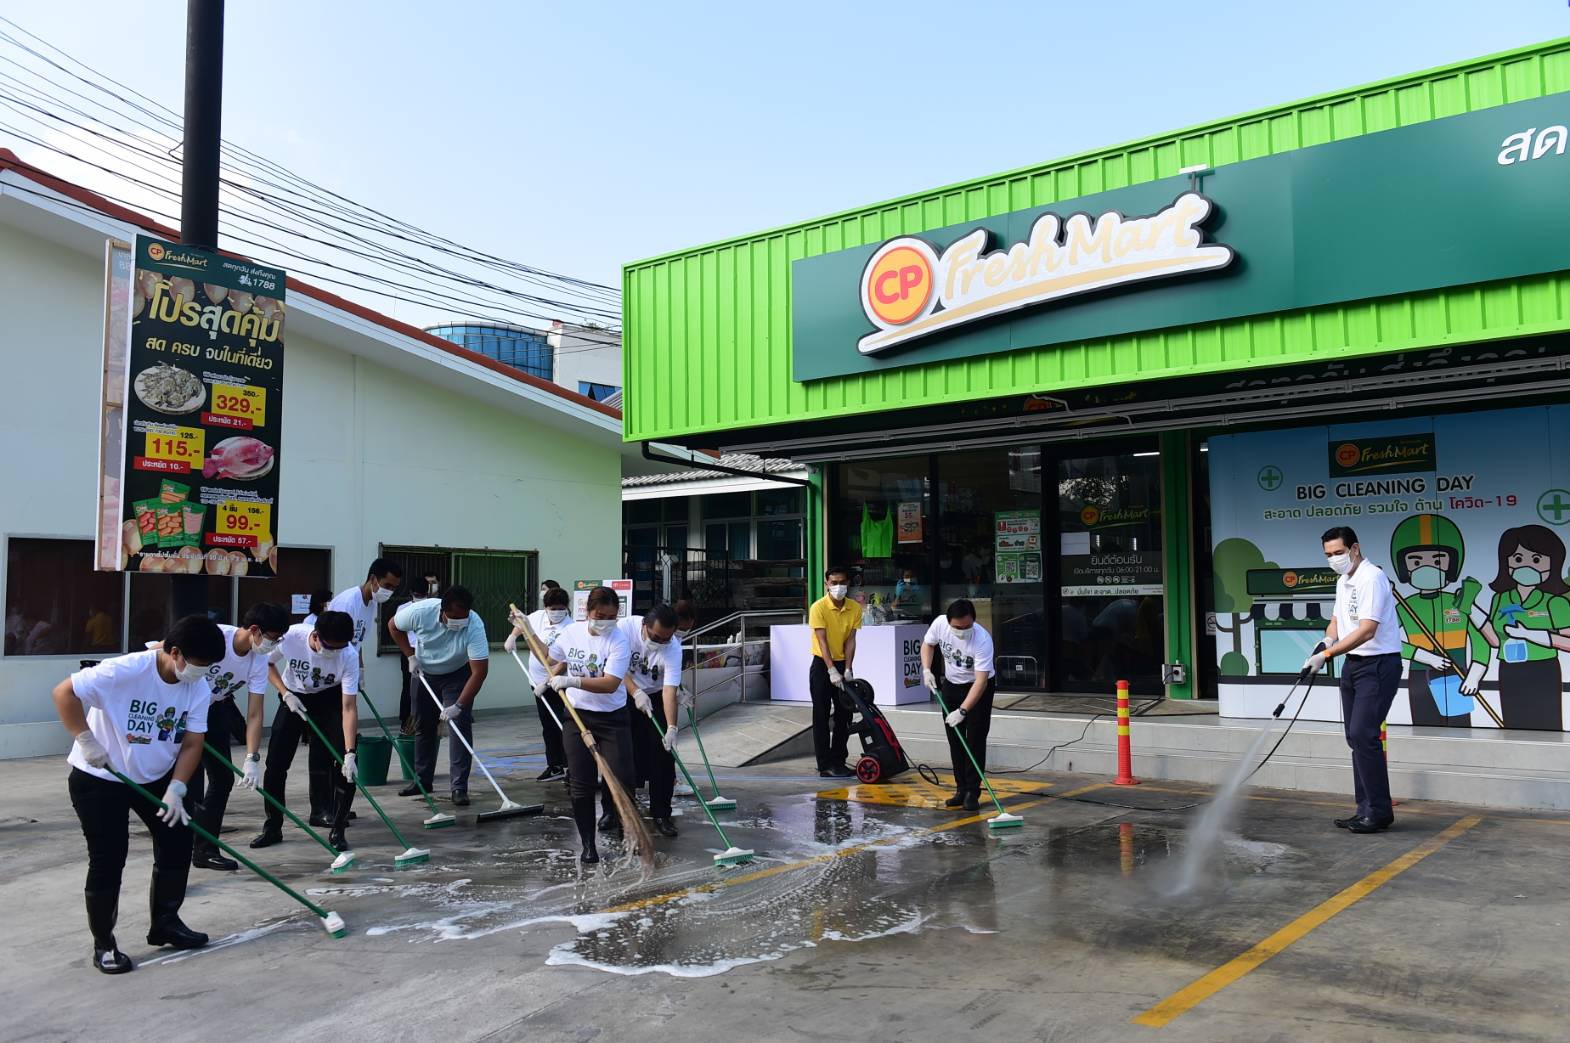 ซีพี เฟรชมาร์ท Big Cleaning Day ทุกสาขาทั่วไทย เพิ่มความมั่นใจลูกค้า สะอาด ปลอดภัย รวมใจต้านวิกฤตโควิด-19 